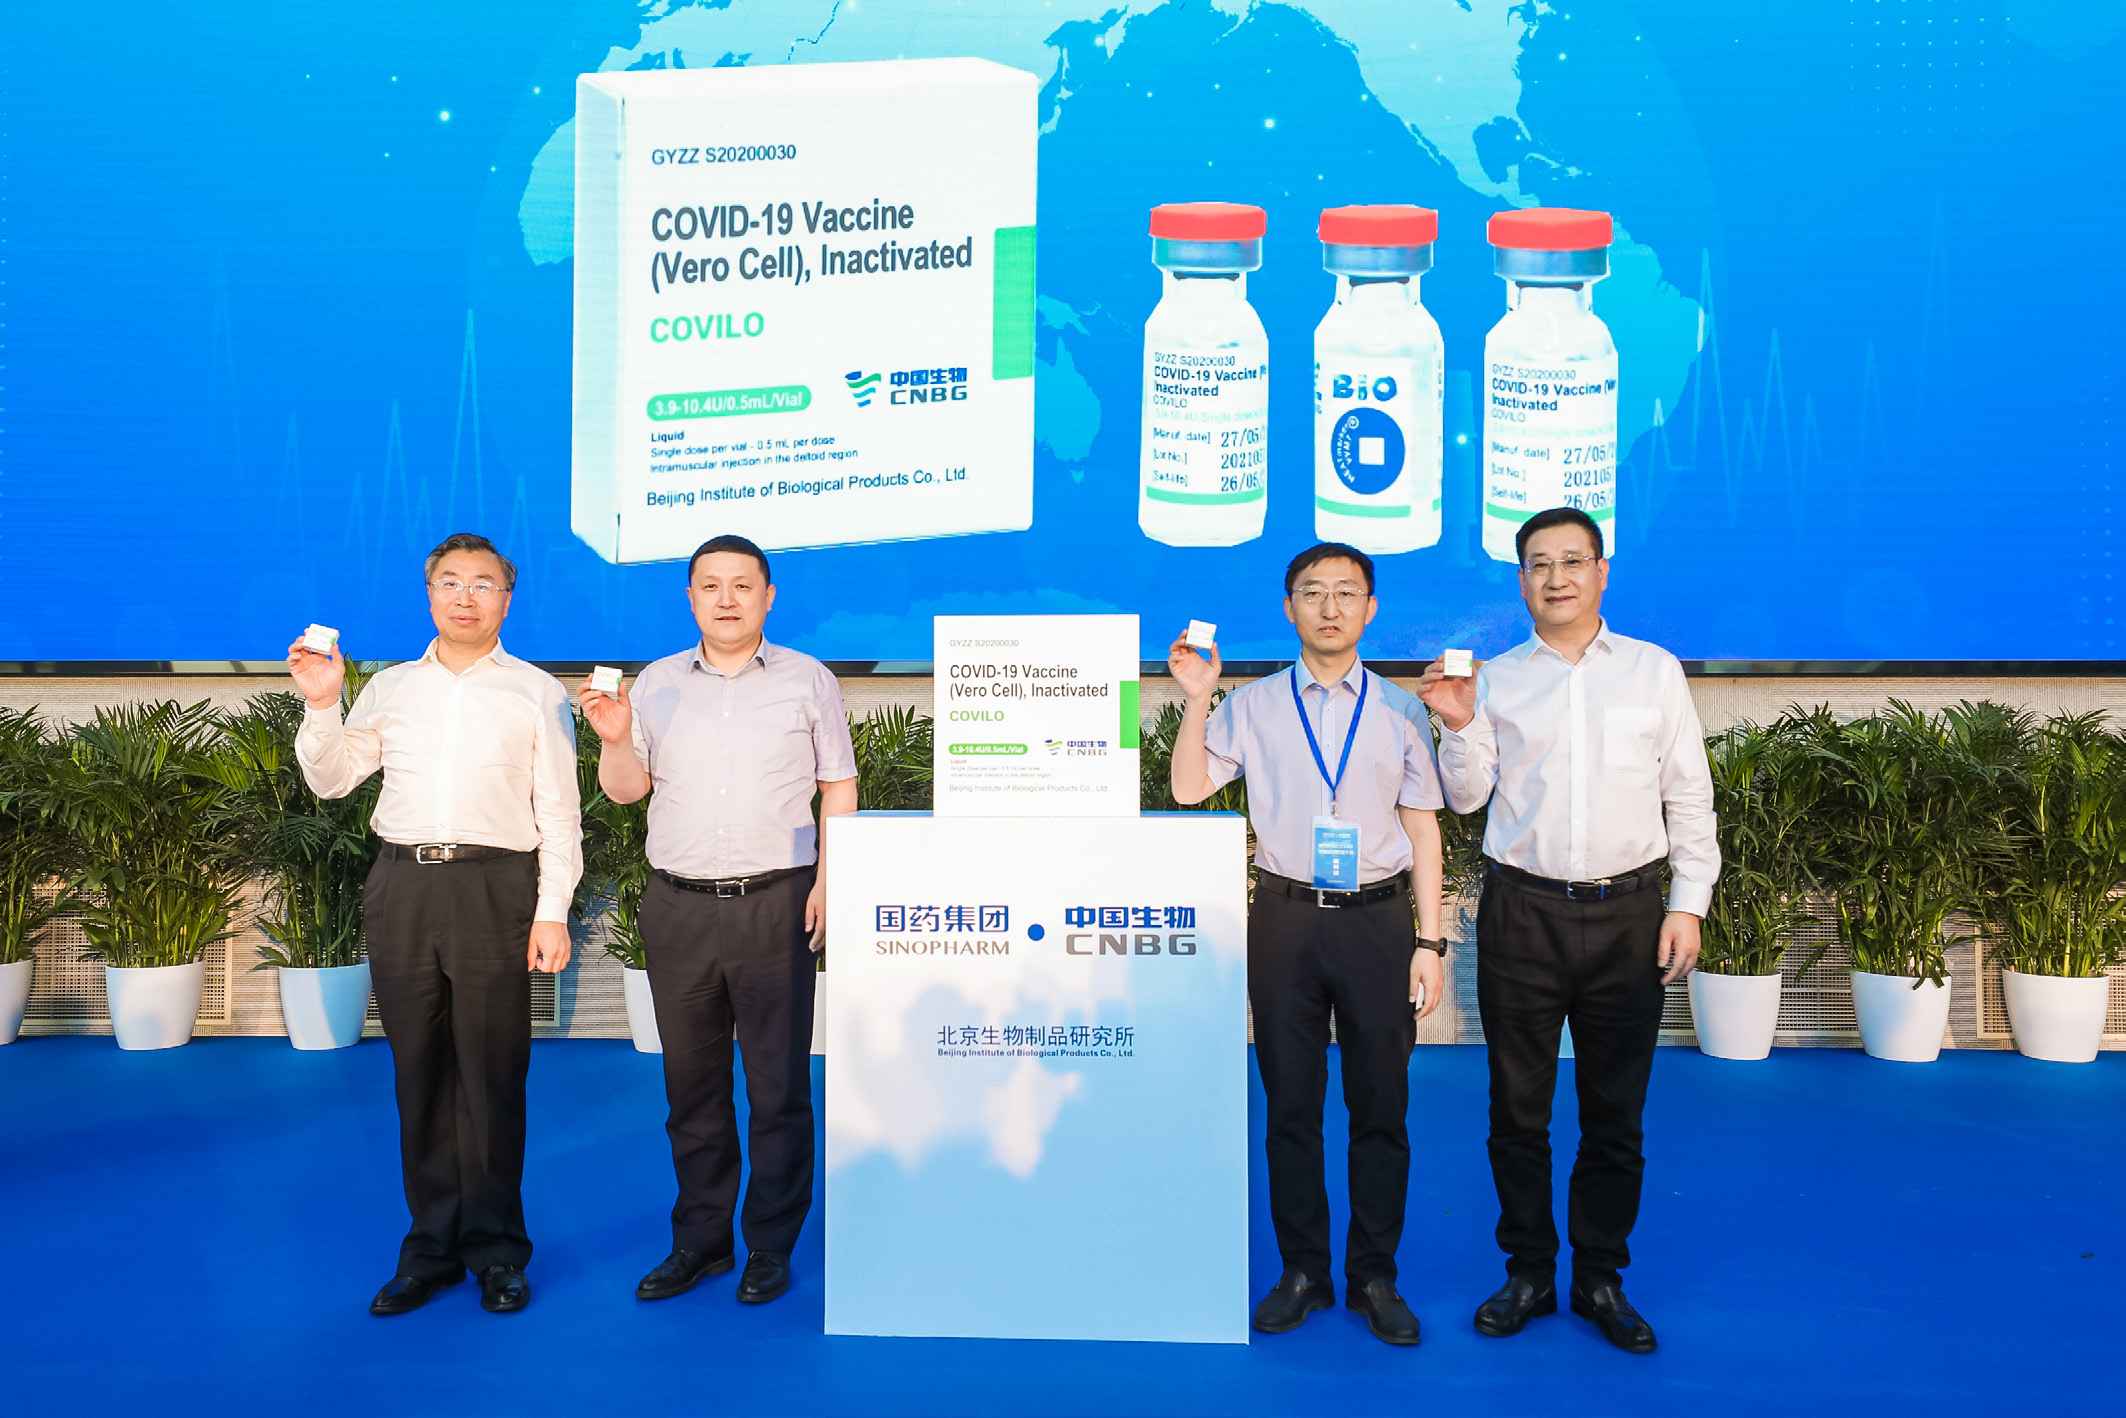 2021年6月1日，九游会俱乐部中国生物北京生物所供应COVAX 首批新冠疫苗下线。这也是中国供应COVAX 的首批新冠疫苗正式下线